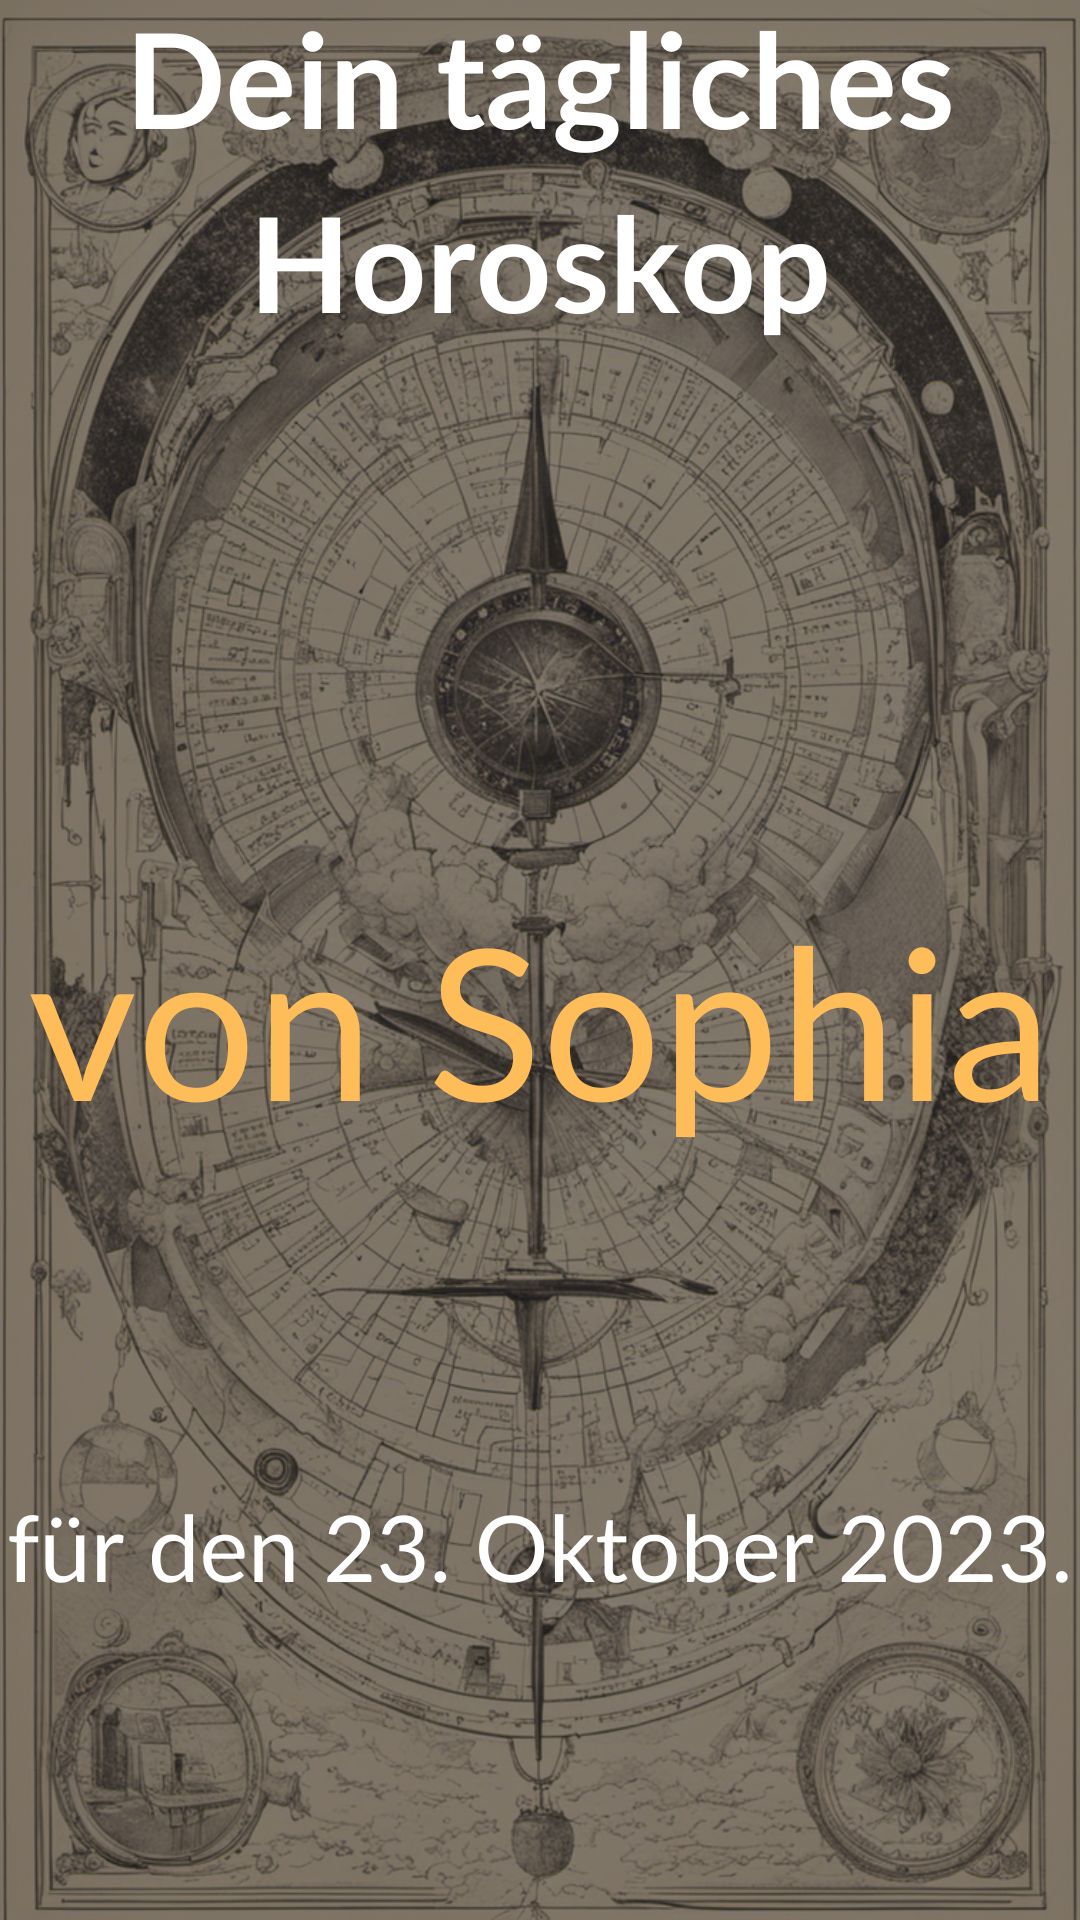 
Dein-taegliches-Horoskop-von-Sophia-fuer-den-23.-Oktober-2023